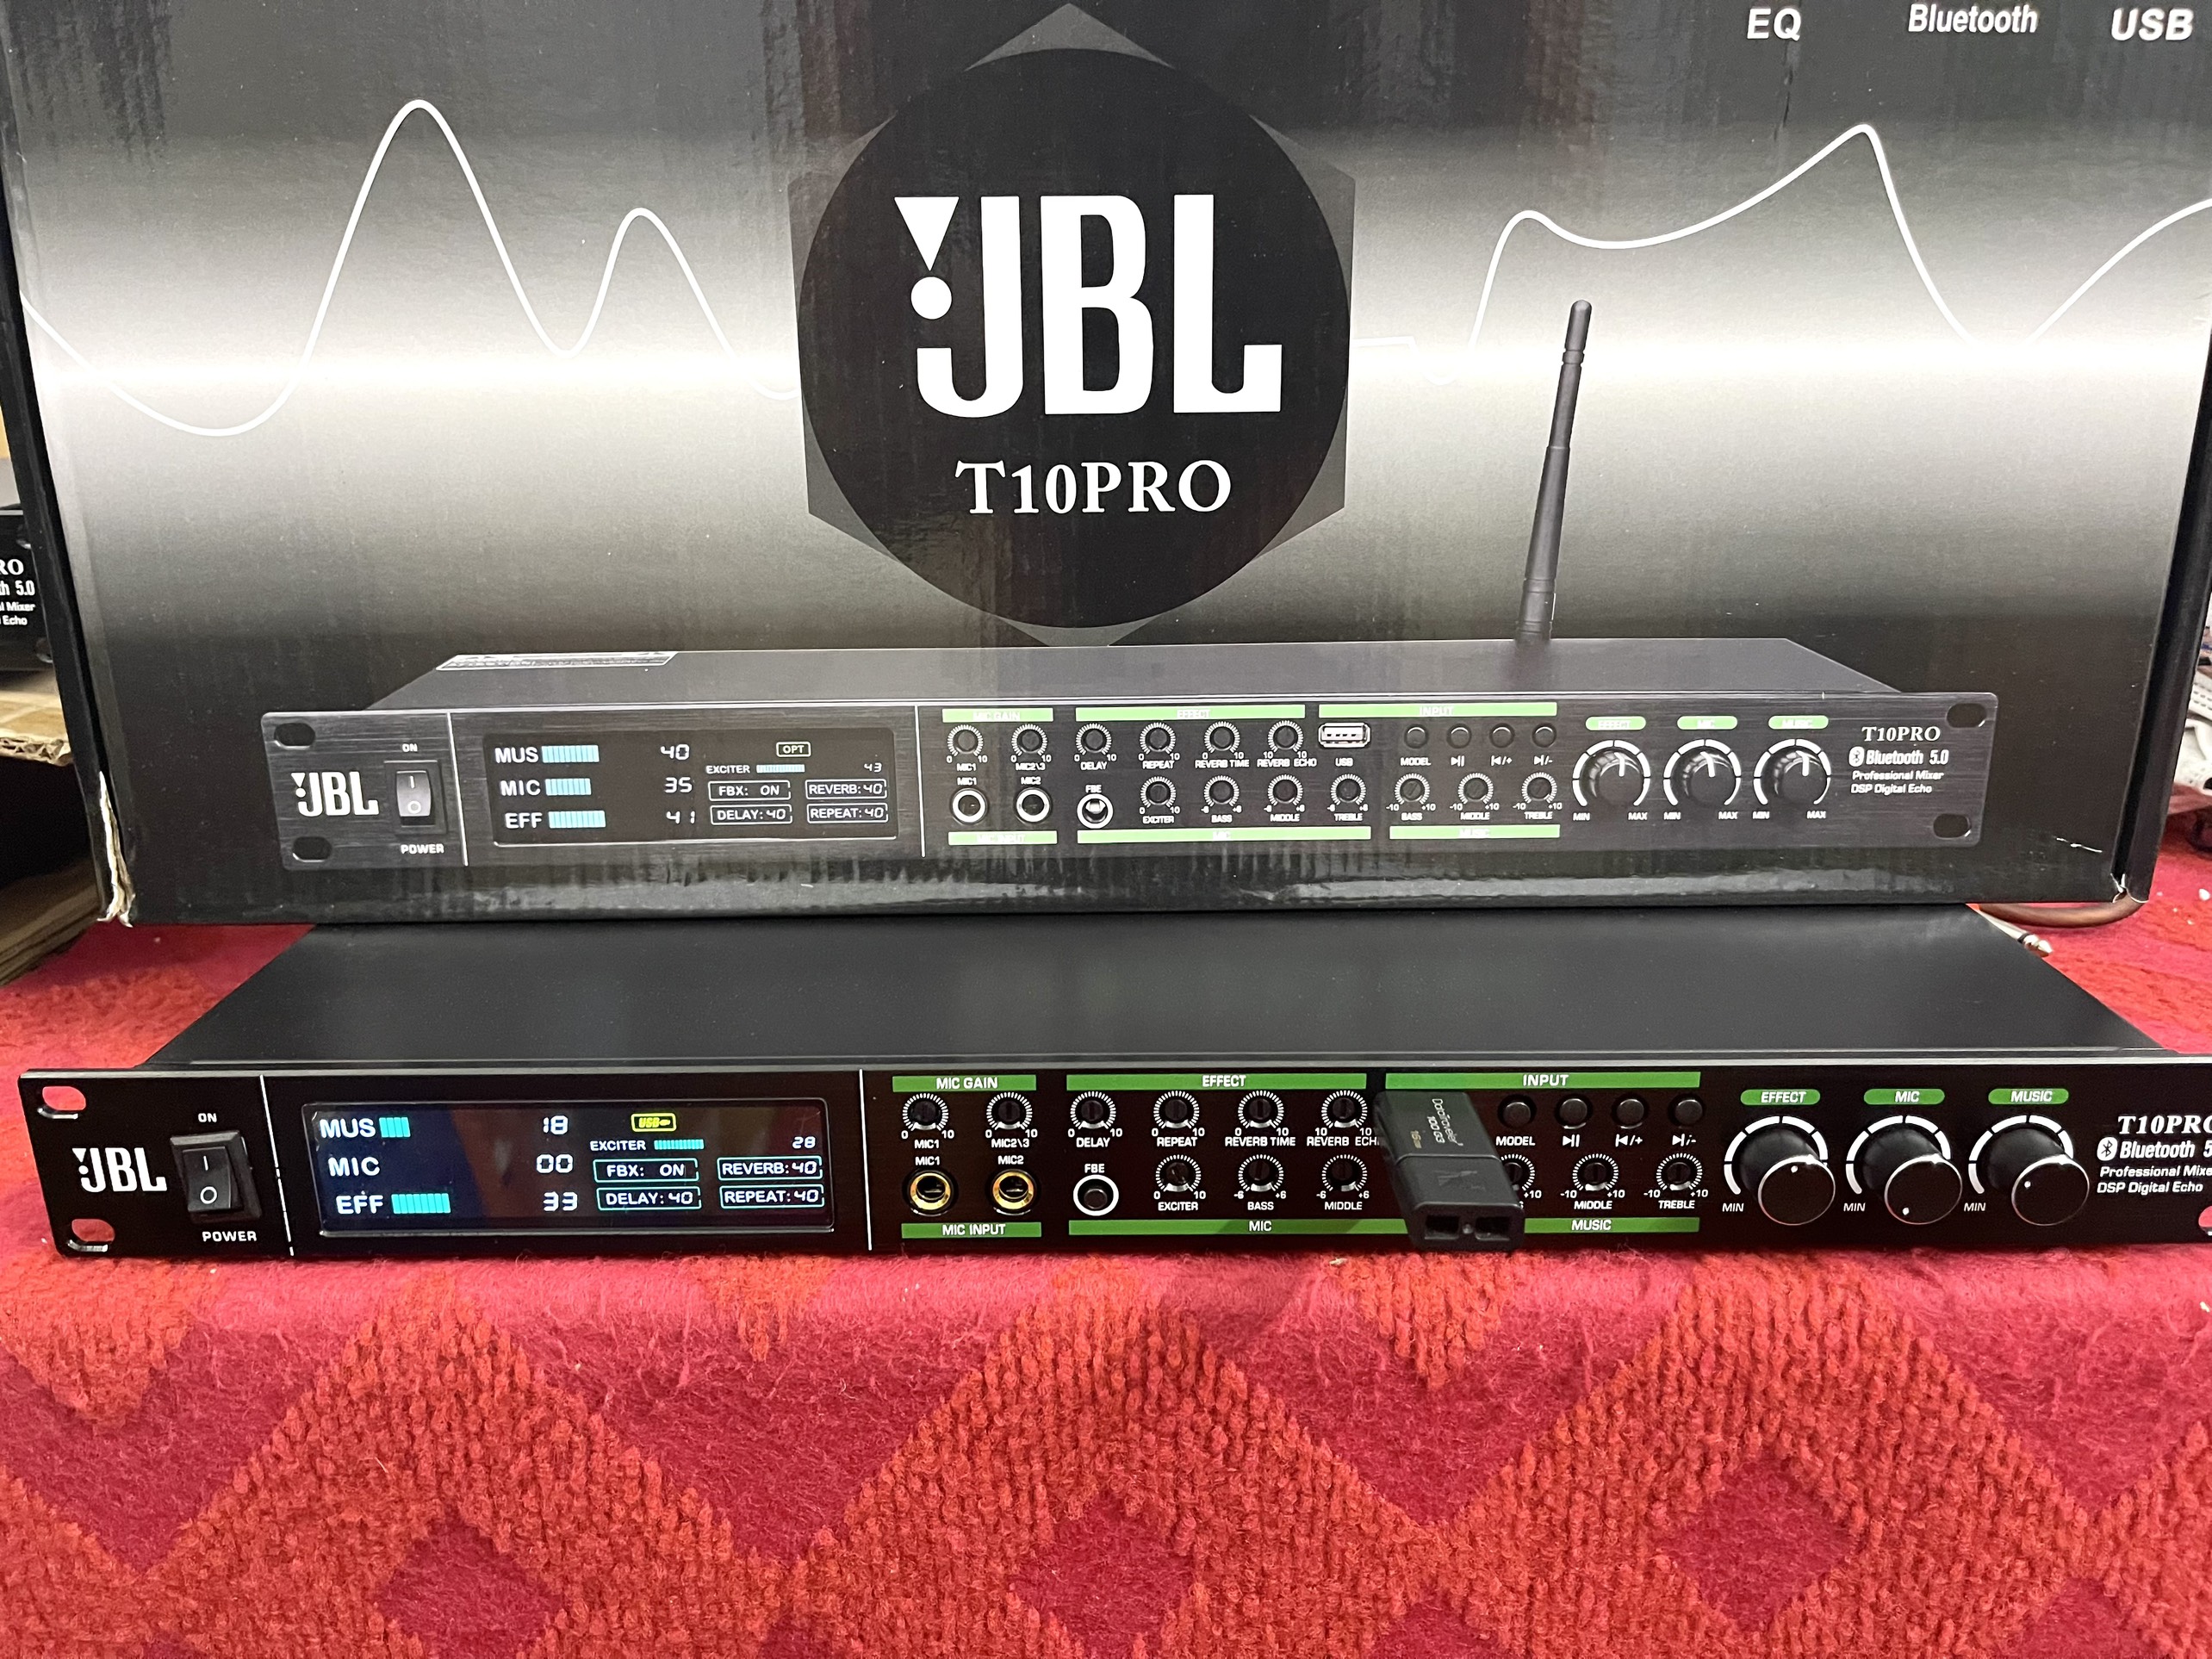 Vang Cơ Lai Số JBL T10 Pro Bluetooth 5.0 - Màn Hình LCD - Đủ Tất Cả Tính Năng Của Vang Cơ, Chống Hú FBX, Reverd, USB - Tốc Độ Truyền Dẫn Tín Hiệu Ổn Định - Thiết Kế Hiện Đại, Cuốn Hút, Sang Trọng